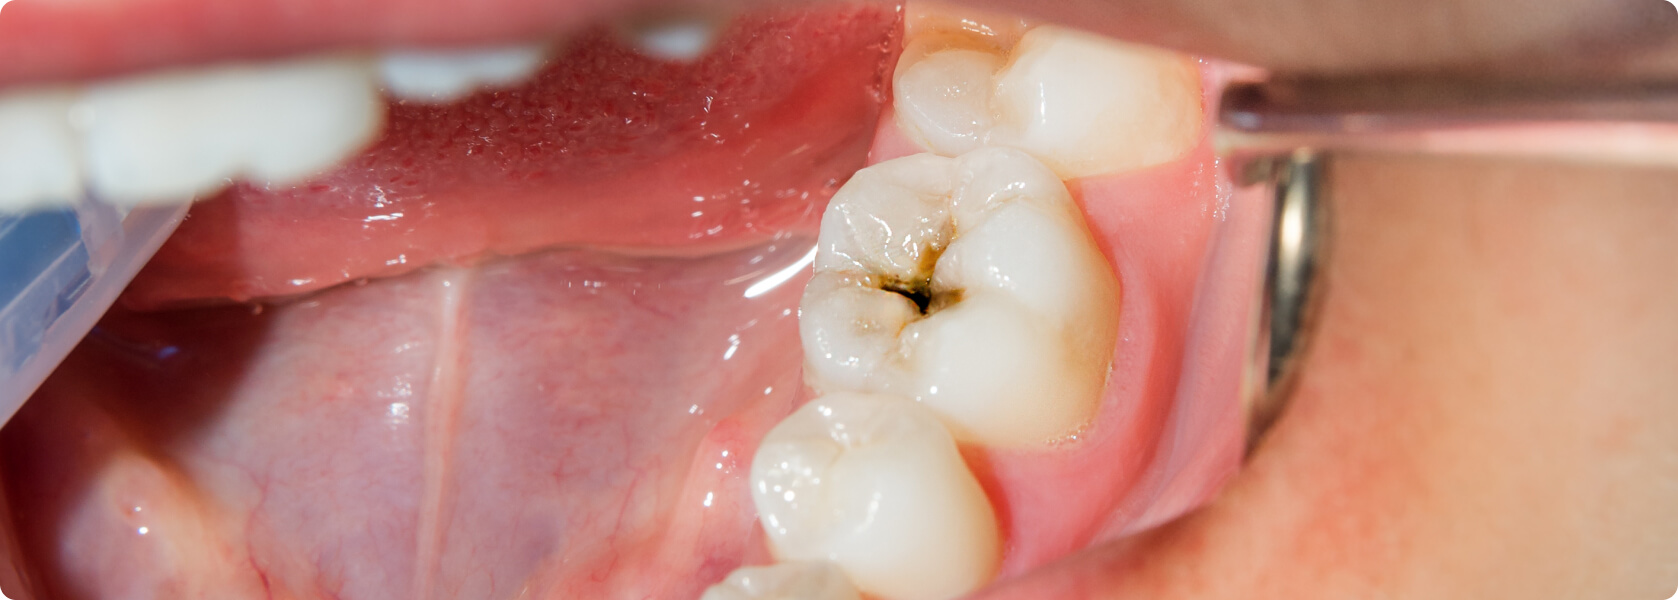 Wird schmerzt und zahn grau Zahnschmerzen nach